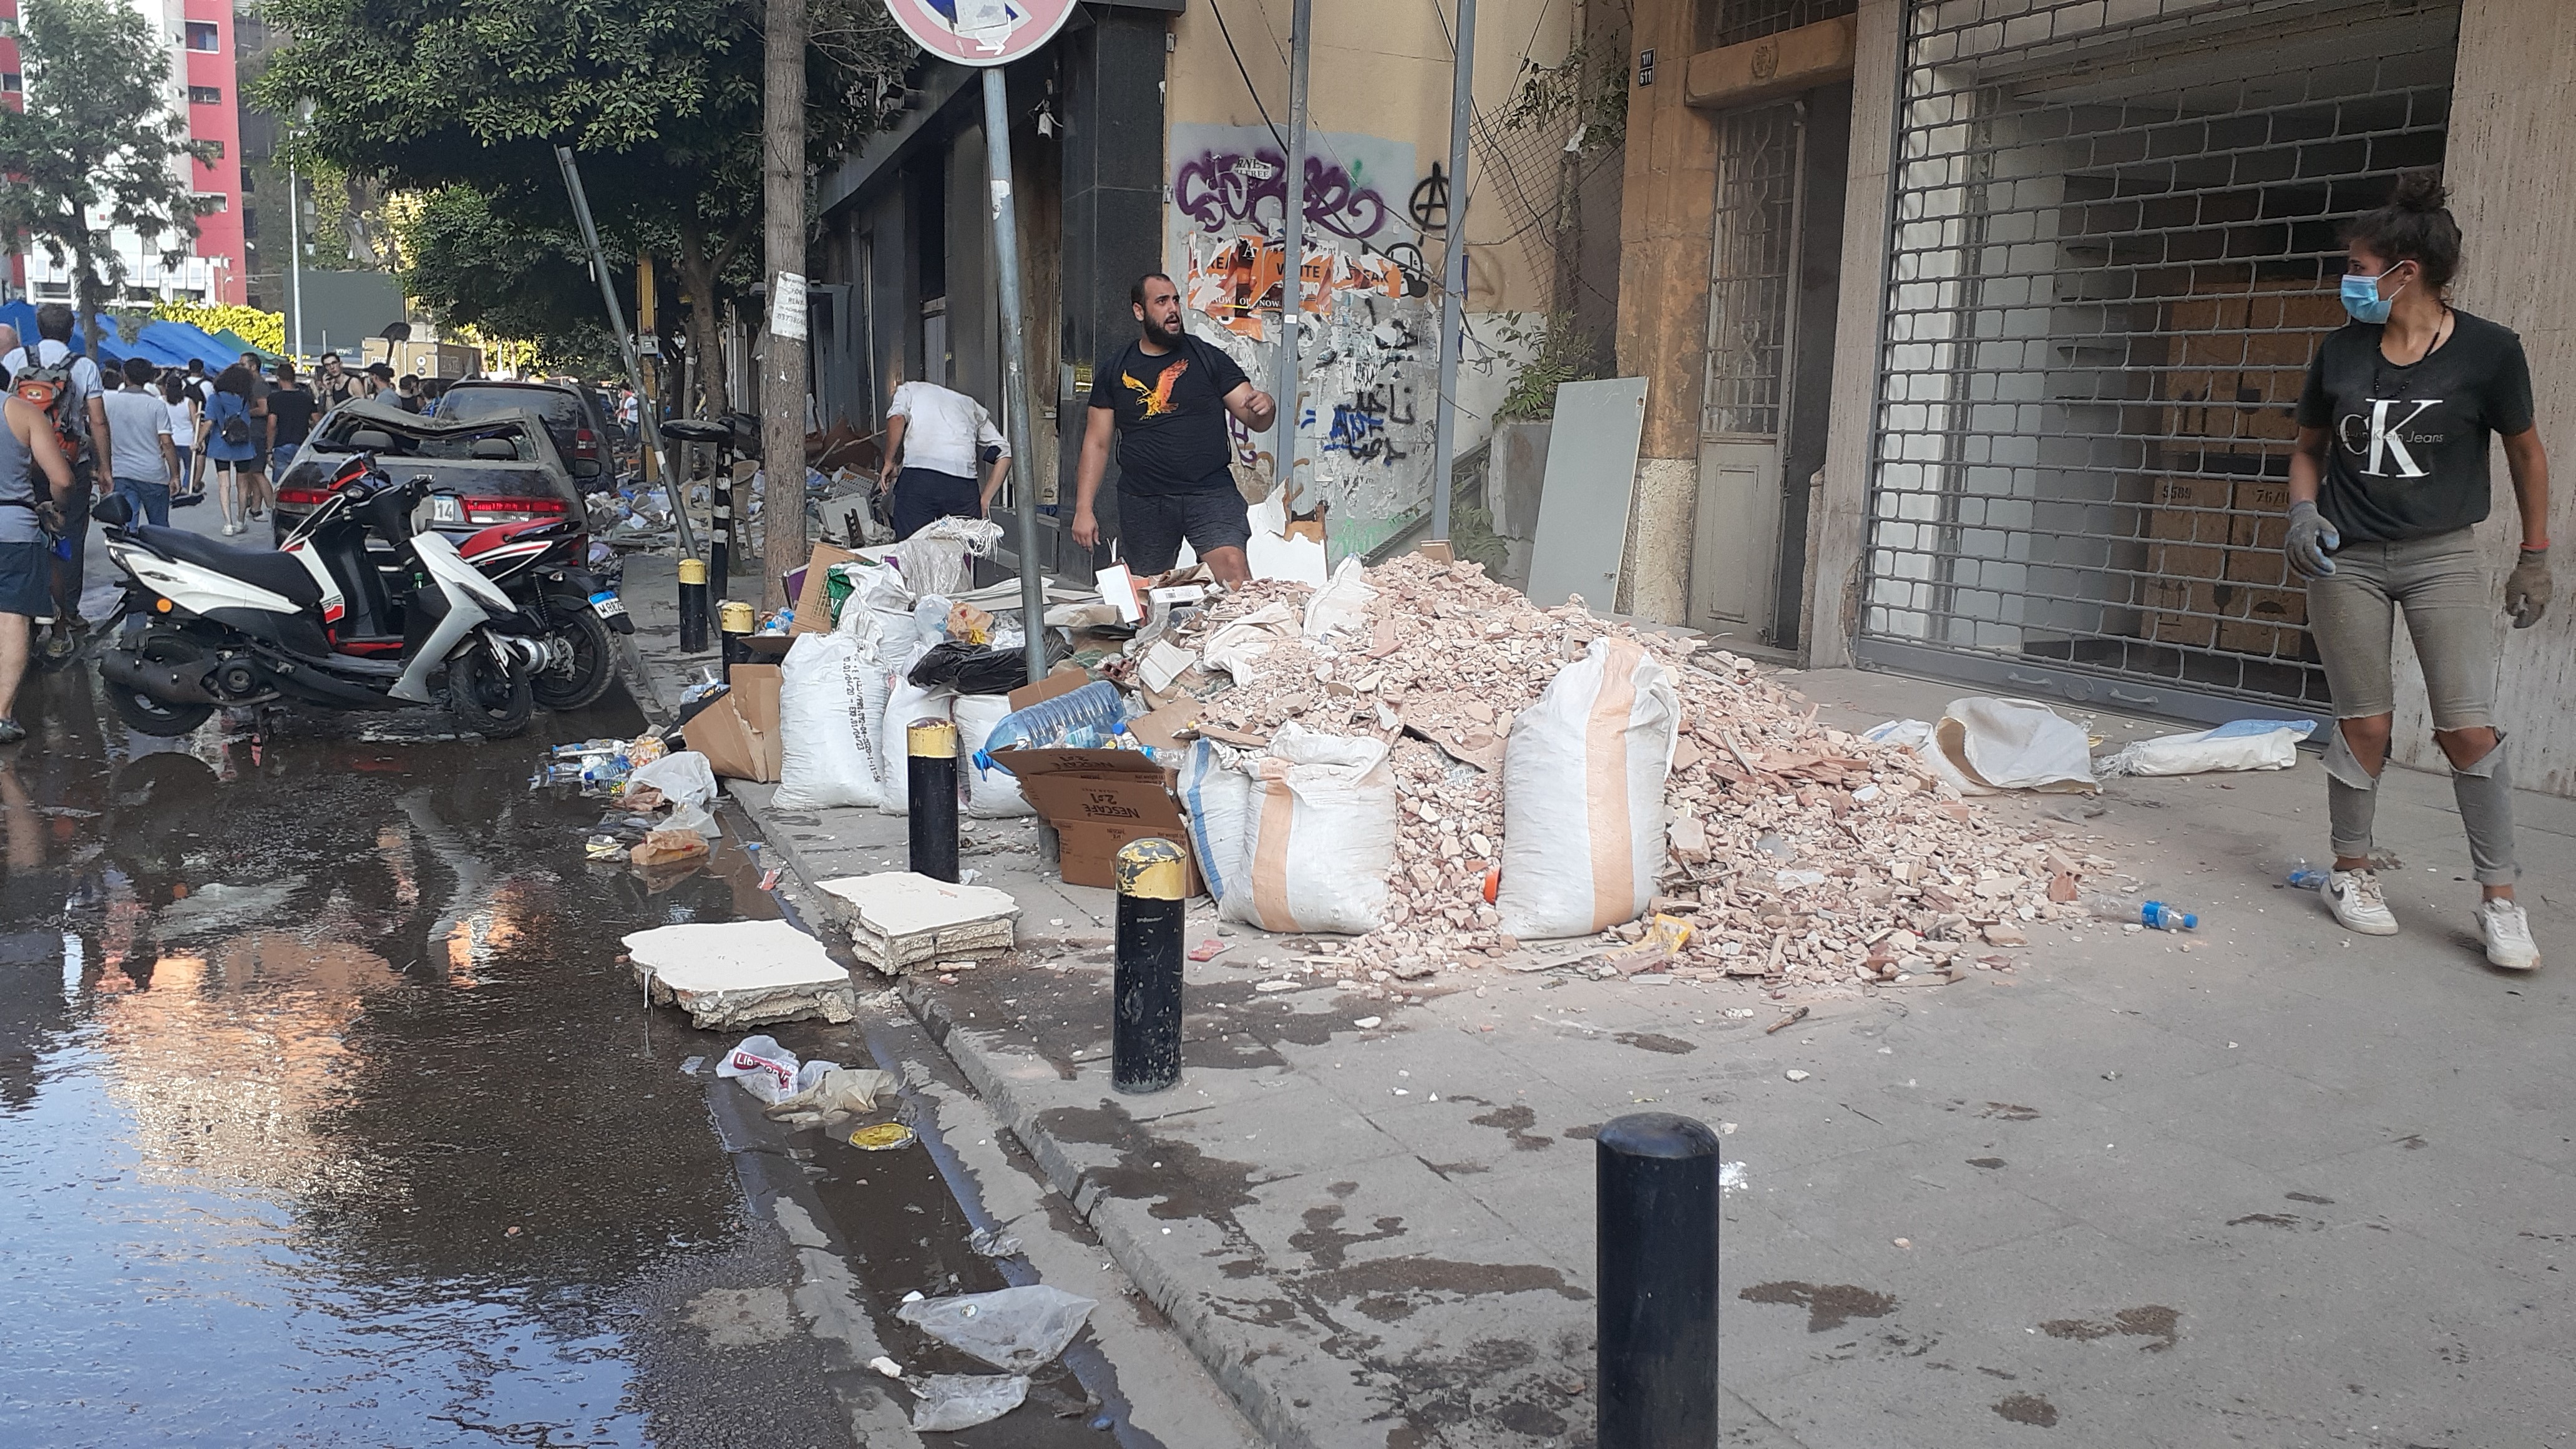 Post-explosion clean-up in Gemmayze (photo: Julia Neumann)